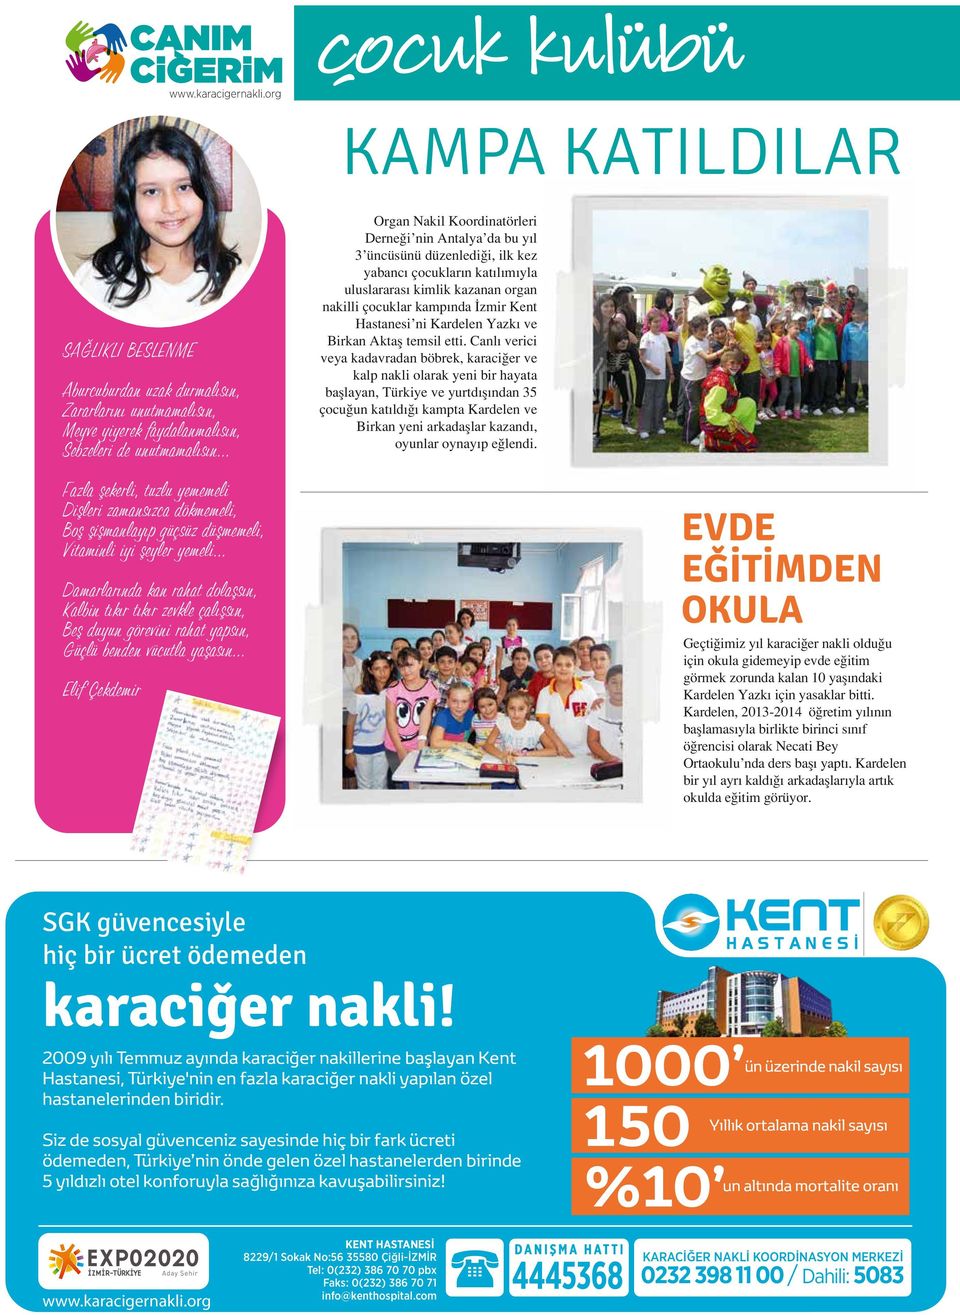 Antalya da bu yıl 3 üncüsünü düzenlediği, ilk kez yabancı çocukların katılımıyla uluslararası kimlik kazanan organ nakilli çocuklar kampında İzmir Kent Hastanesi ni Kardelen Yazkı ve Birkan Aktaş